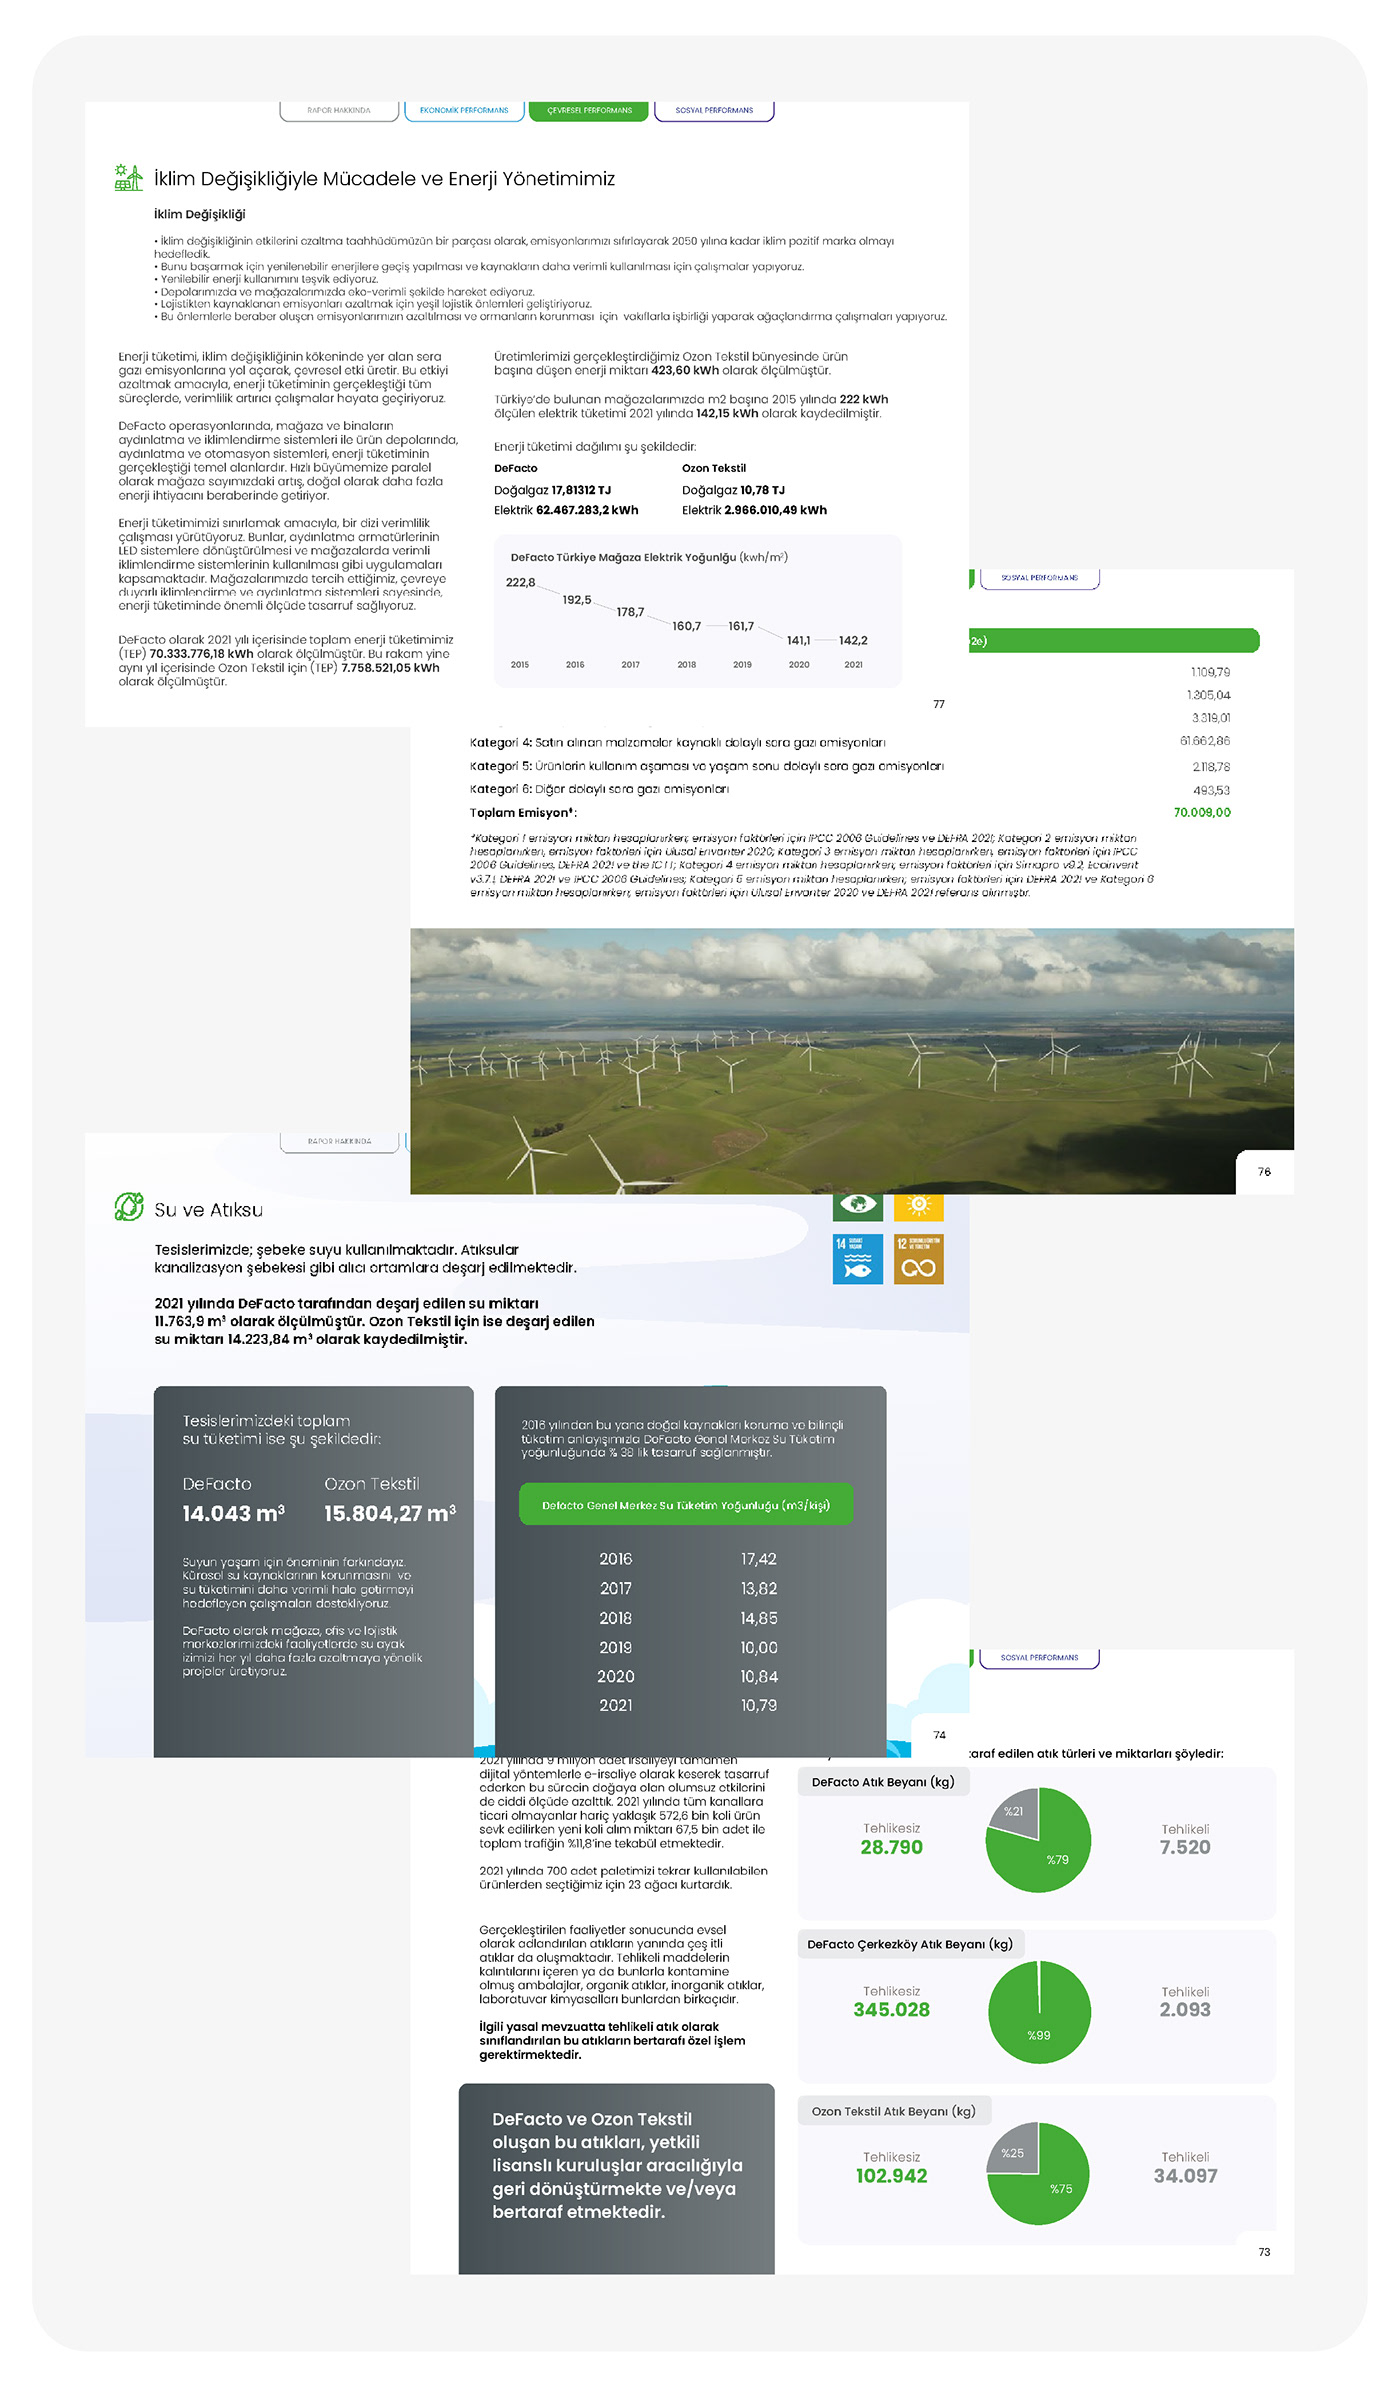 Sustainability report brand graphic design report design designer graphics